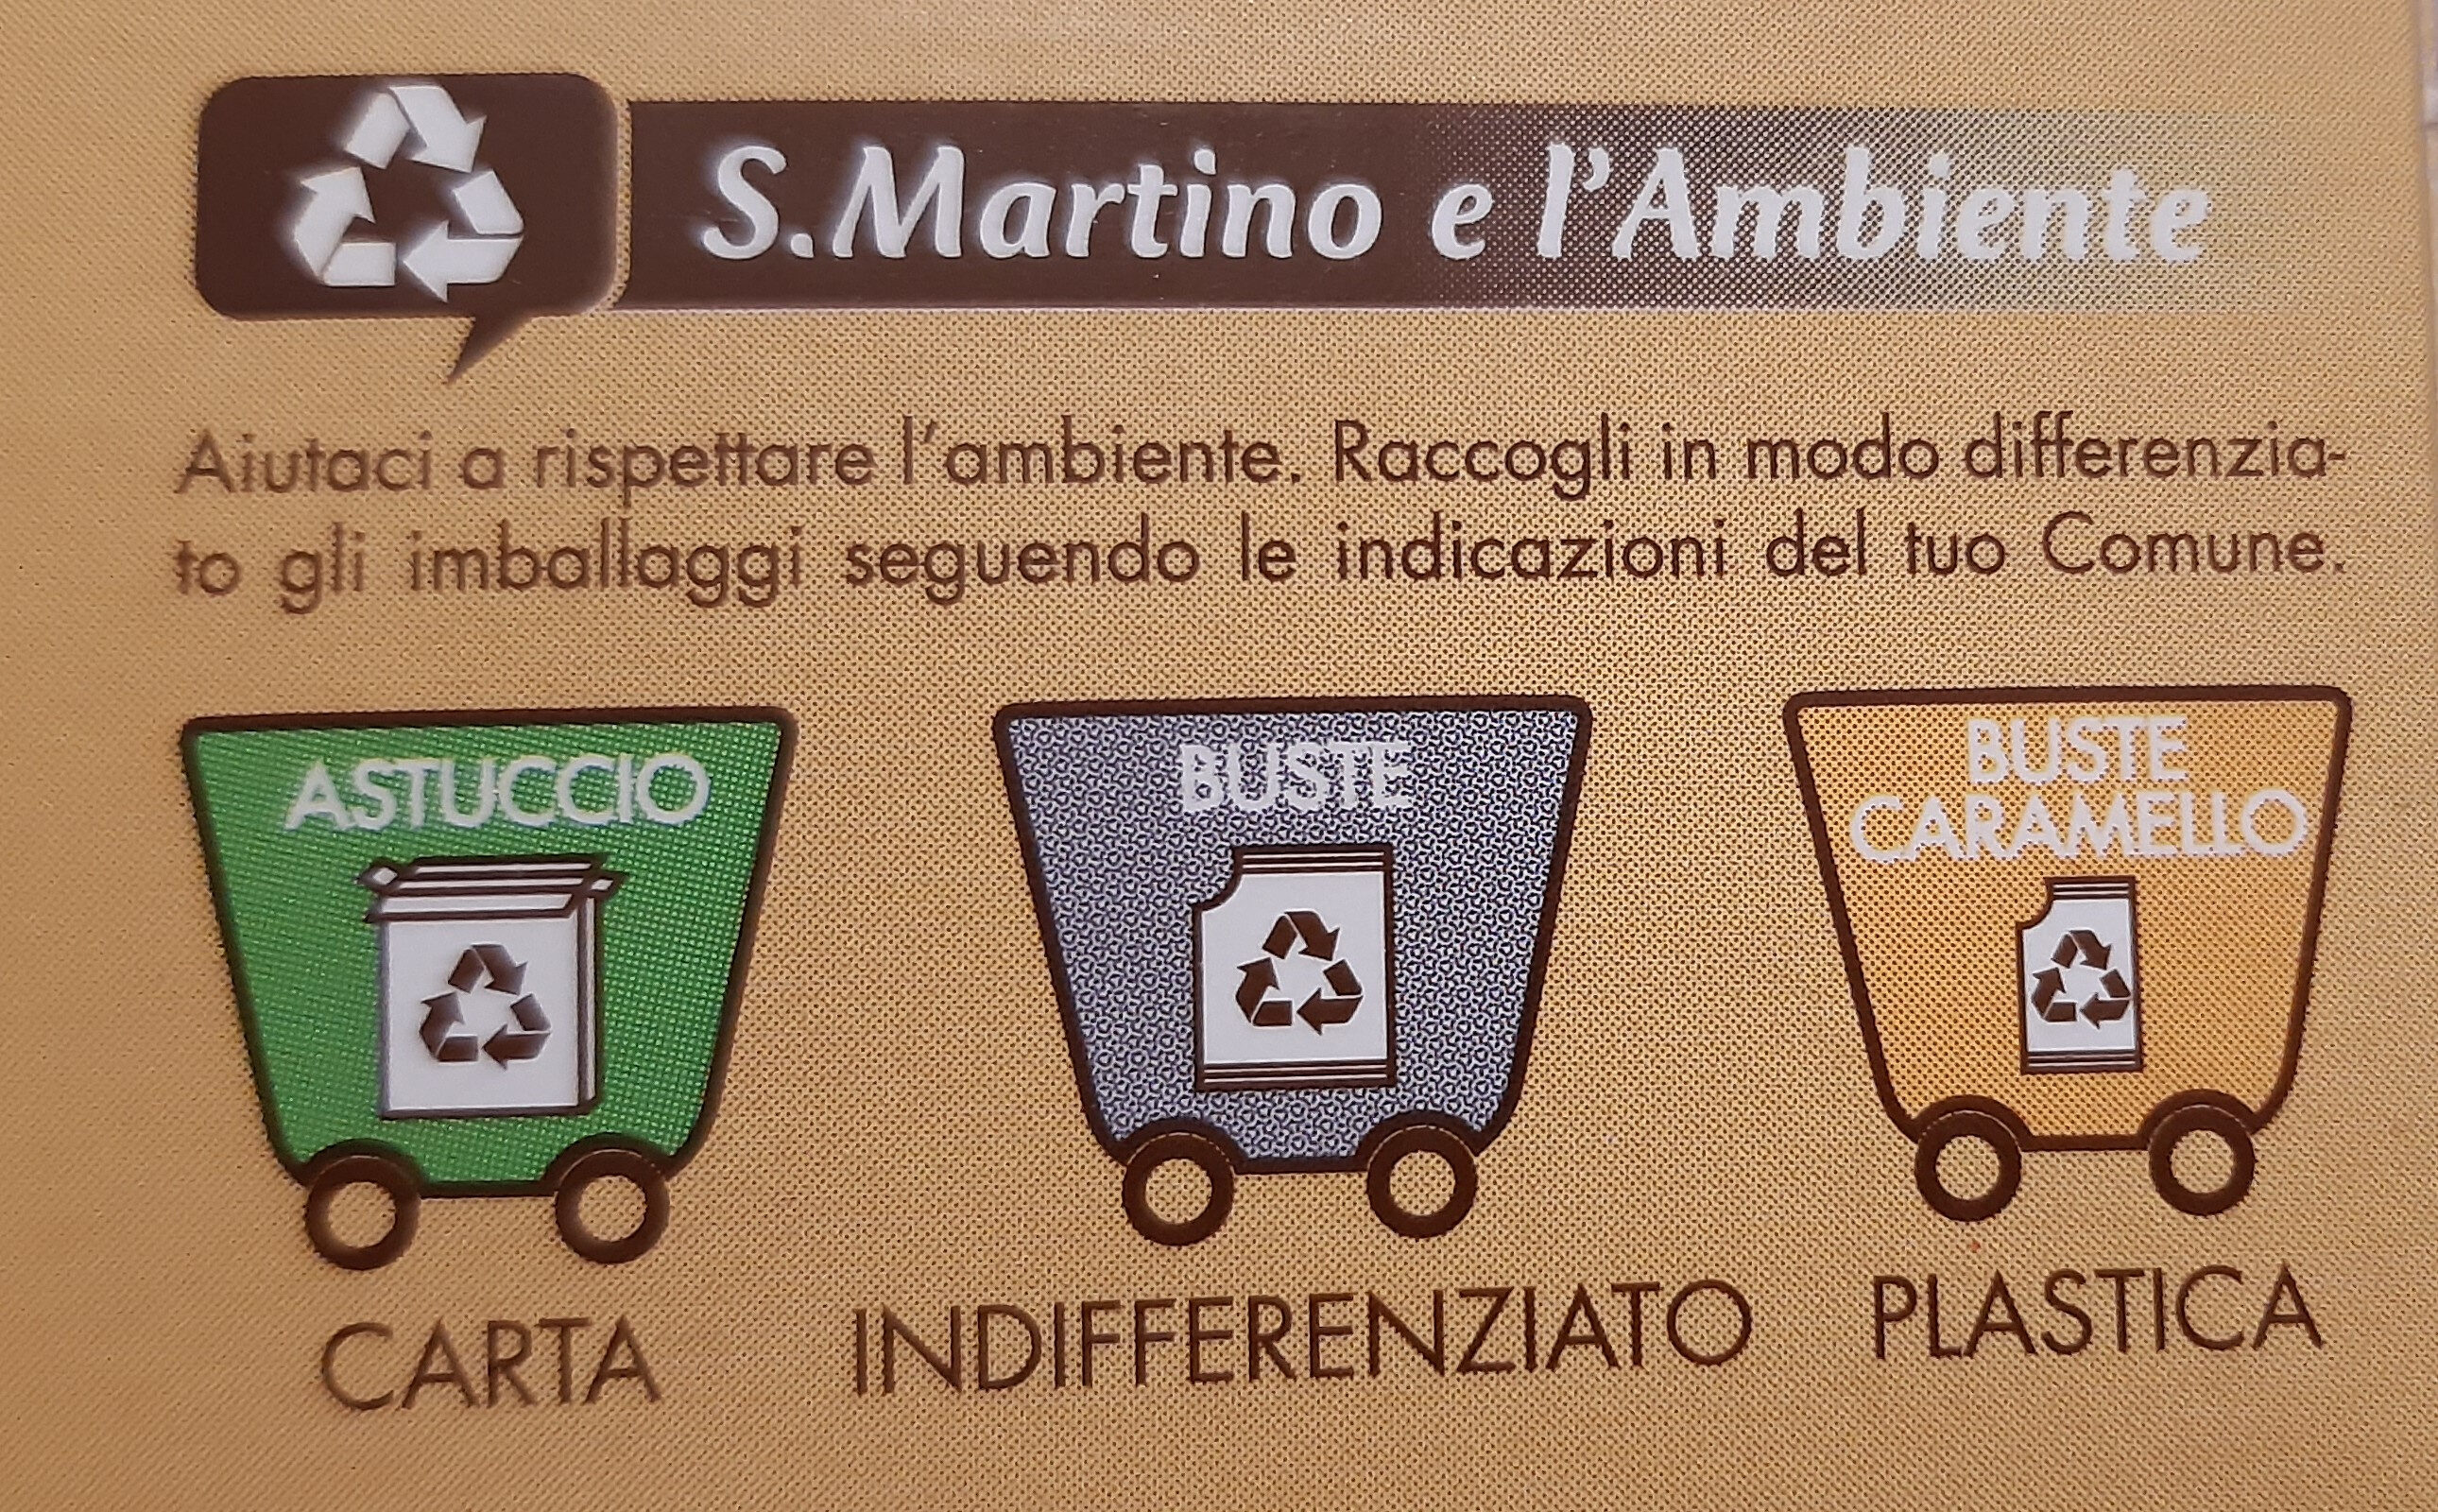 Creme caramel - Istruzioni per il riciclaggio e/o informazioni sull'imballaggio